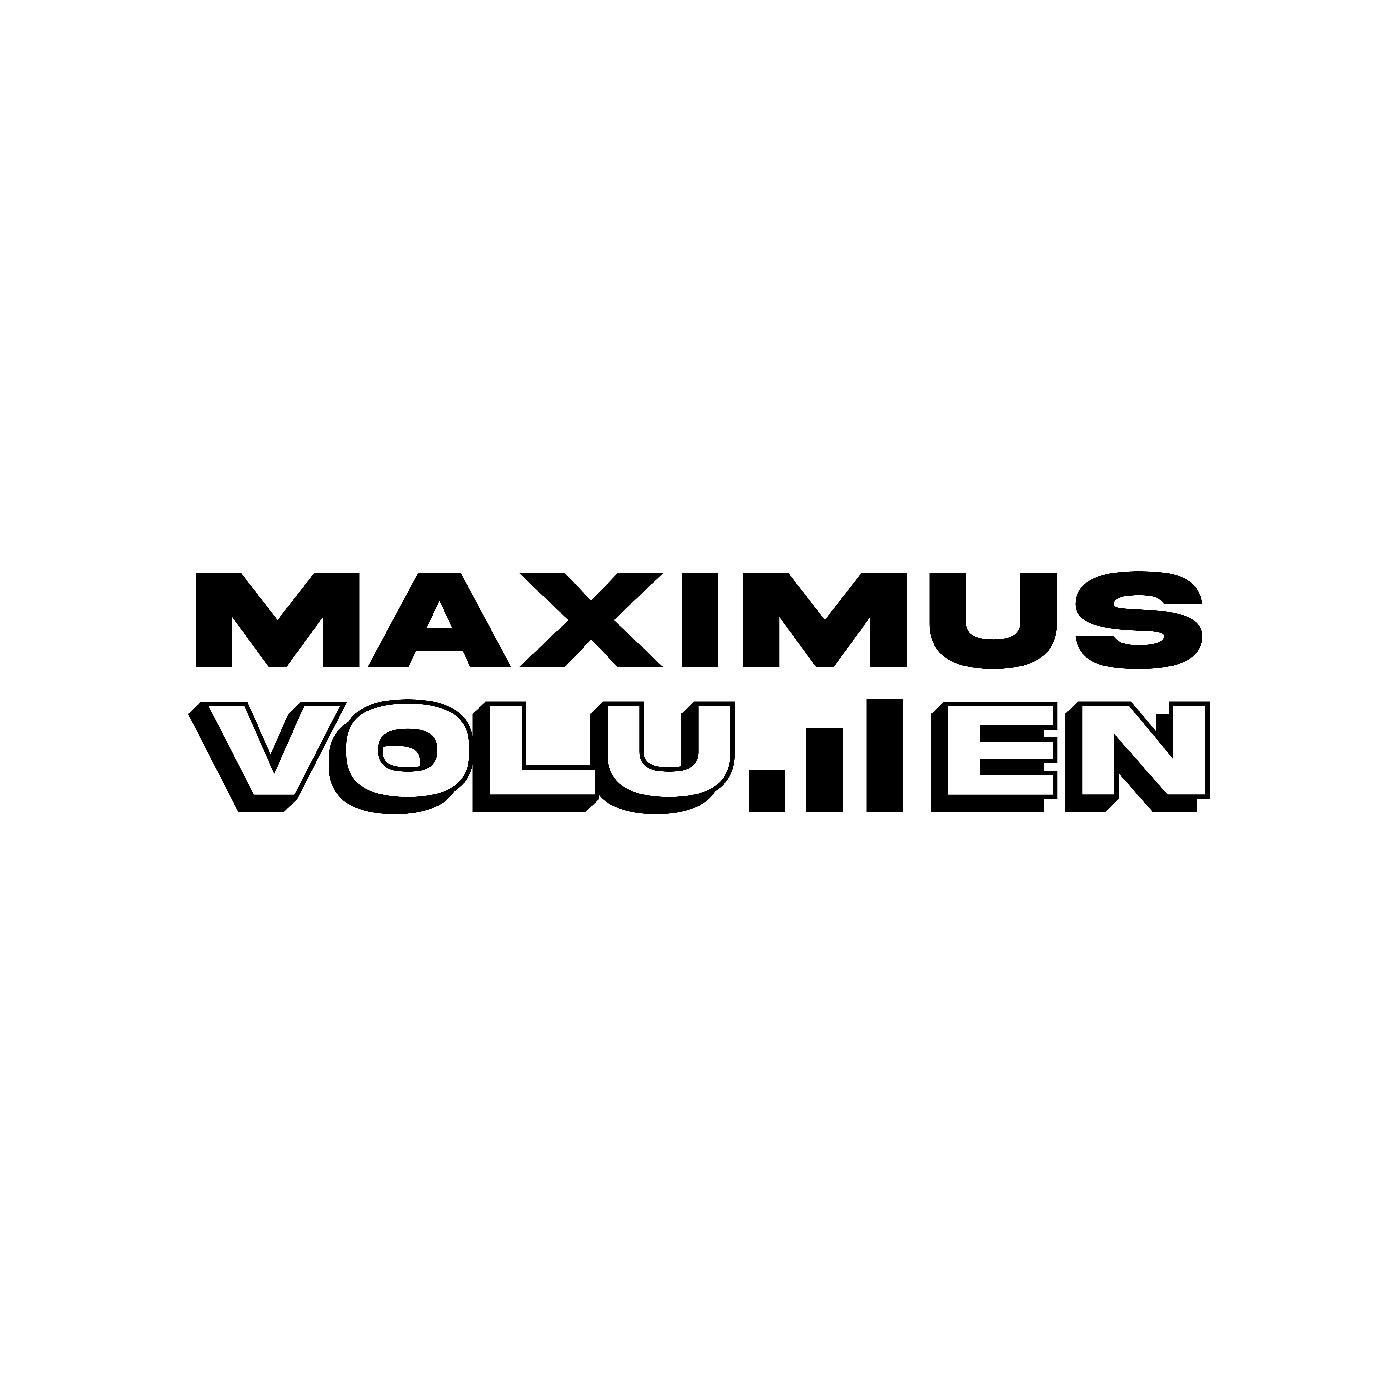 Maximus Volumen